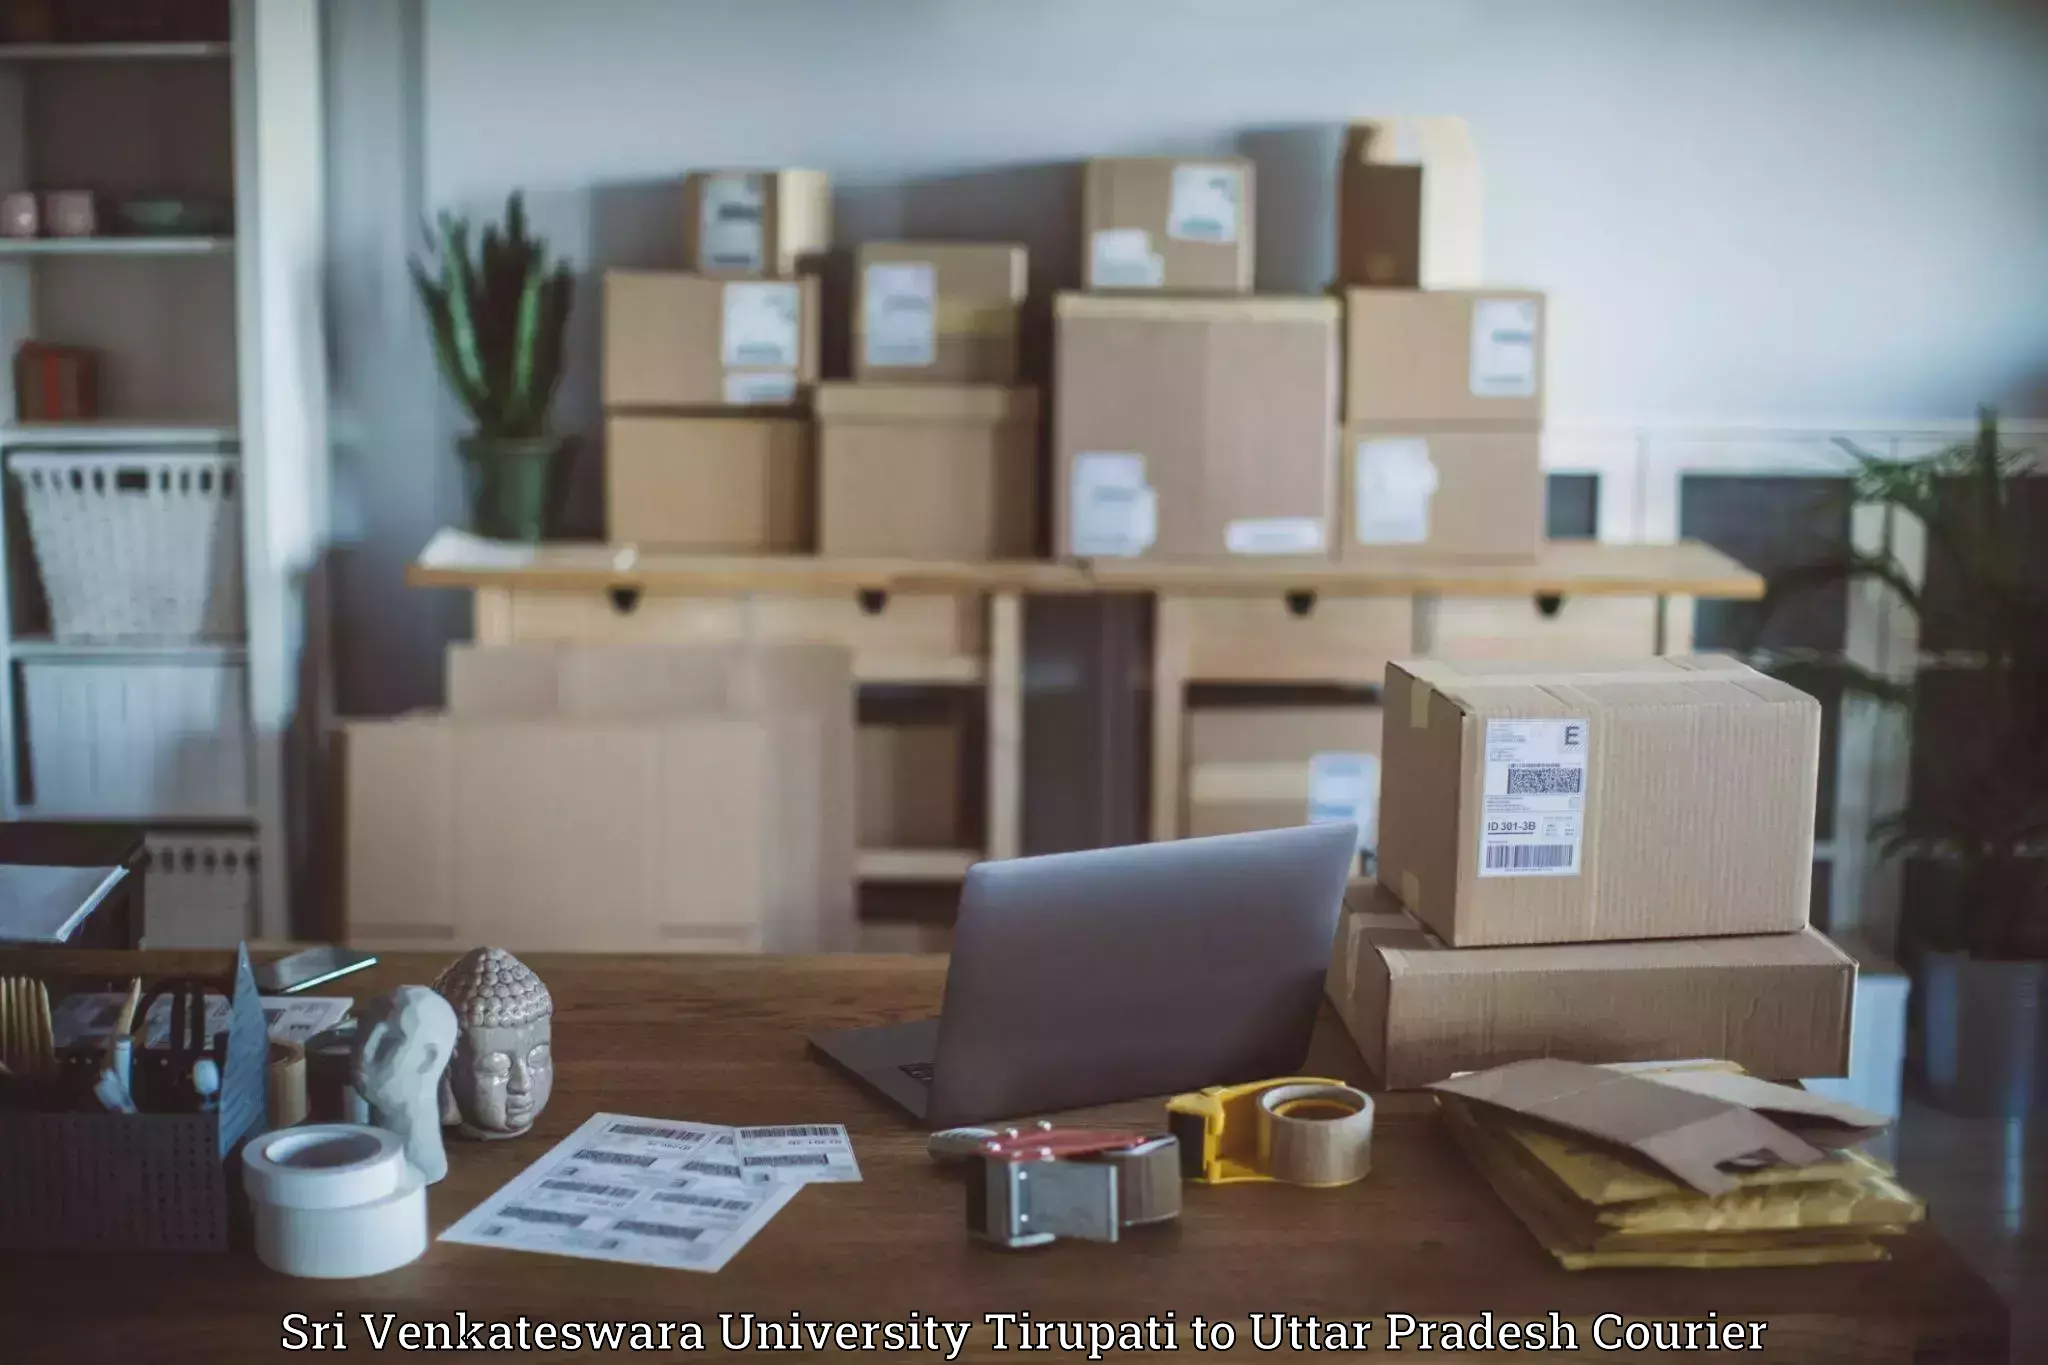 Express logistics providers Sri Venkateswara University Tirupati to Banda